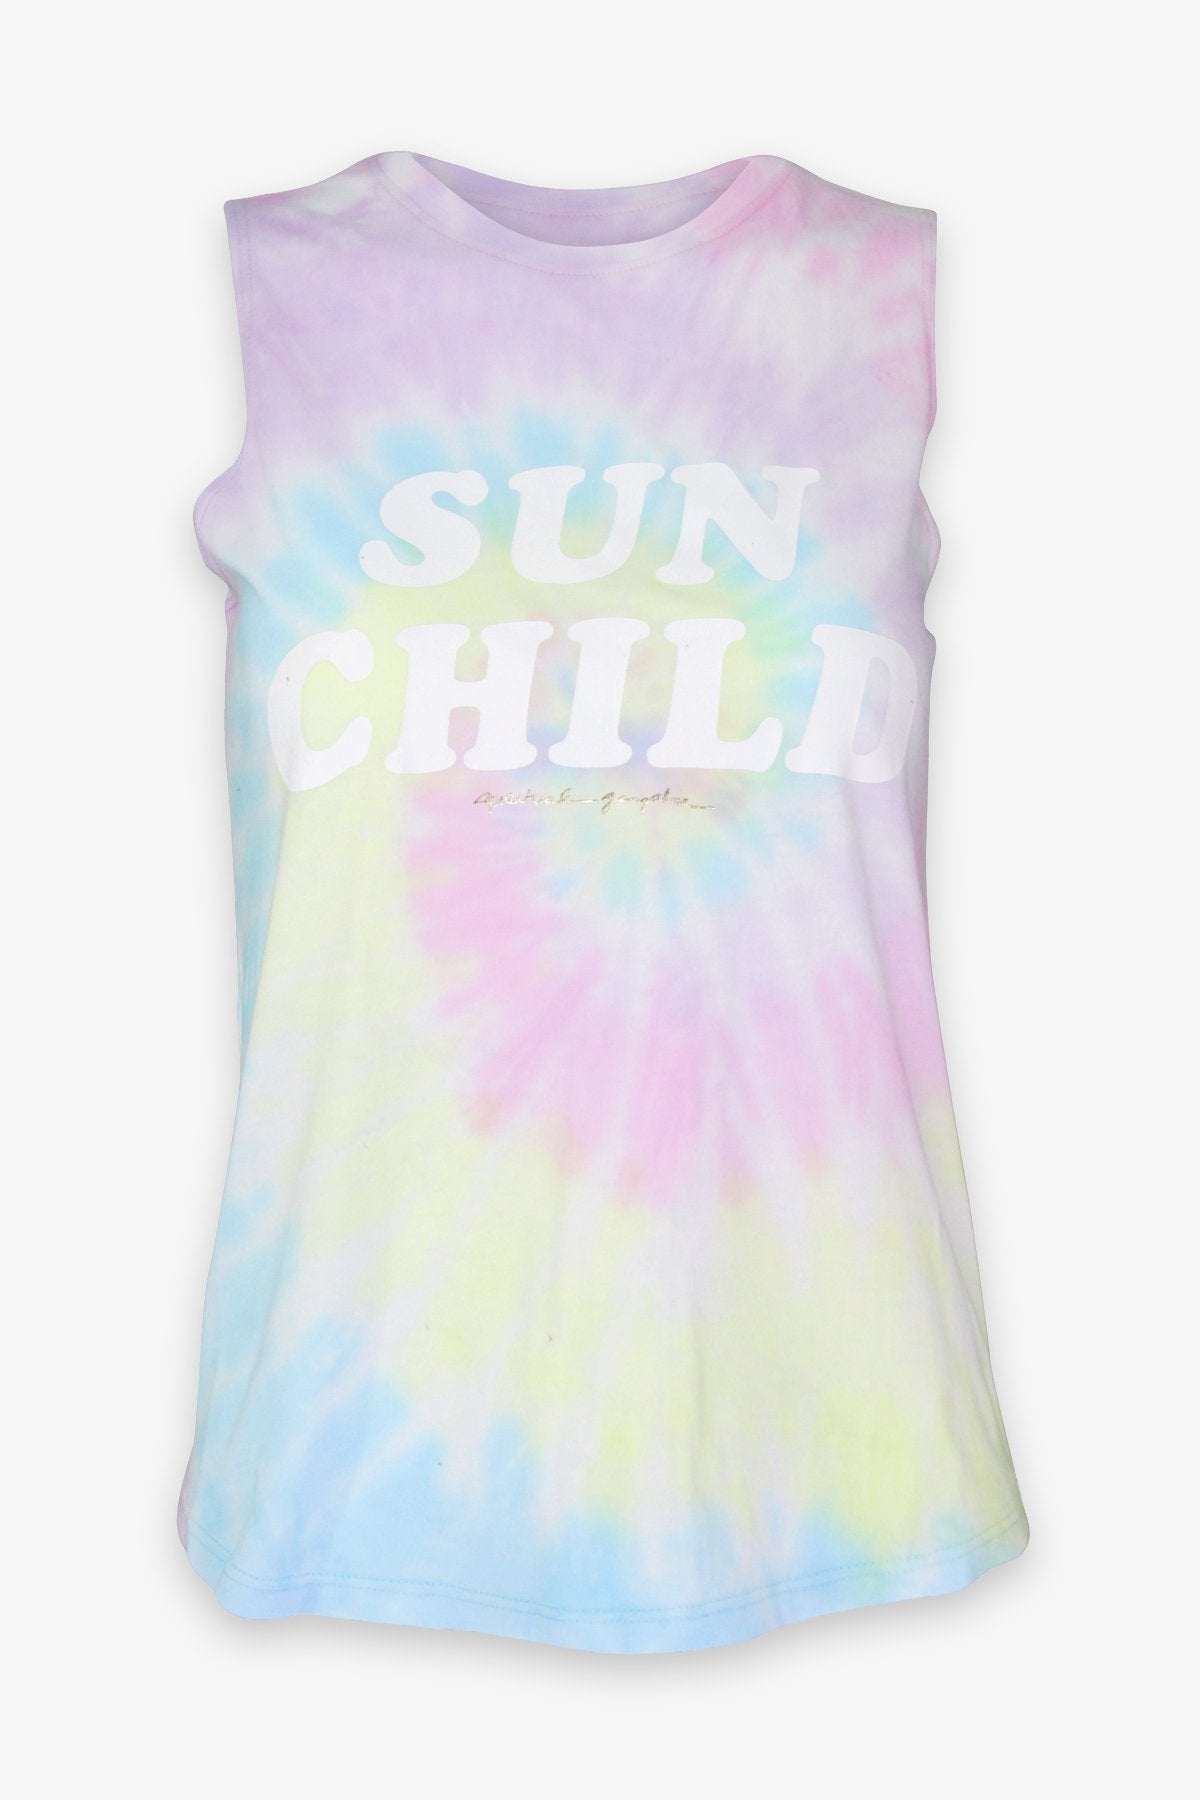 Sun Child Muscle Tank in Paradise Swirl Tie Dye - shop-olivia.com